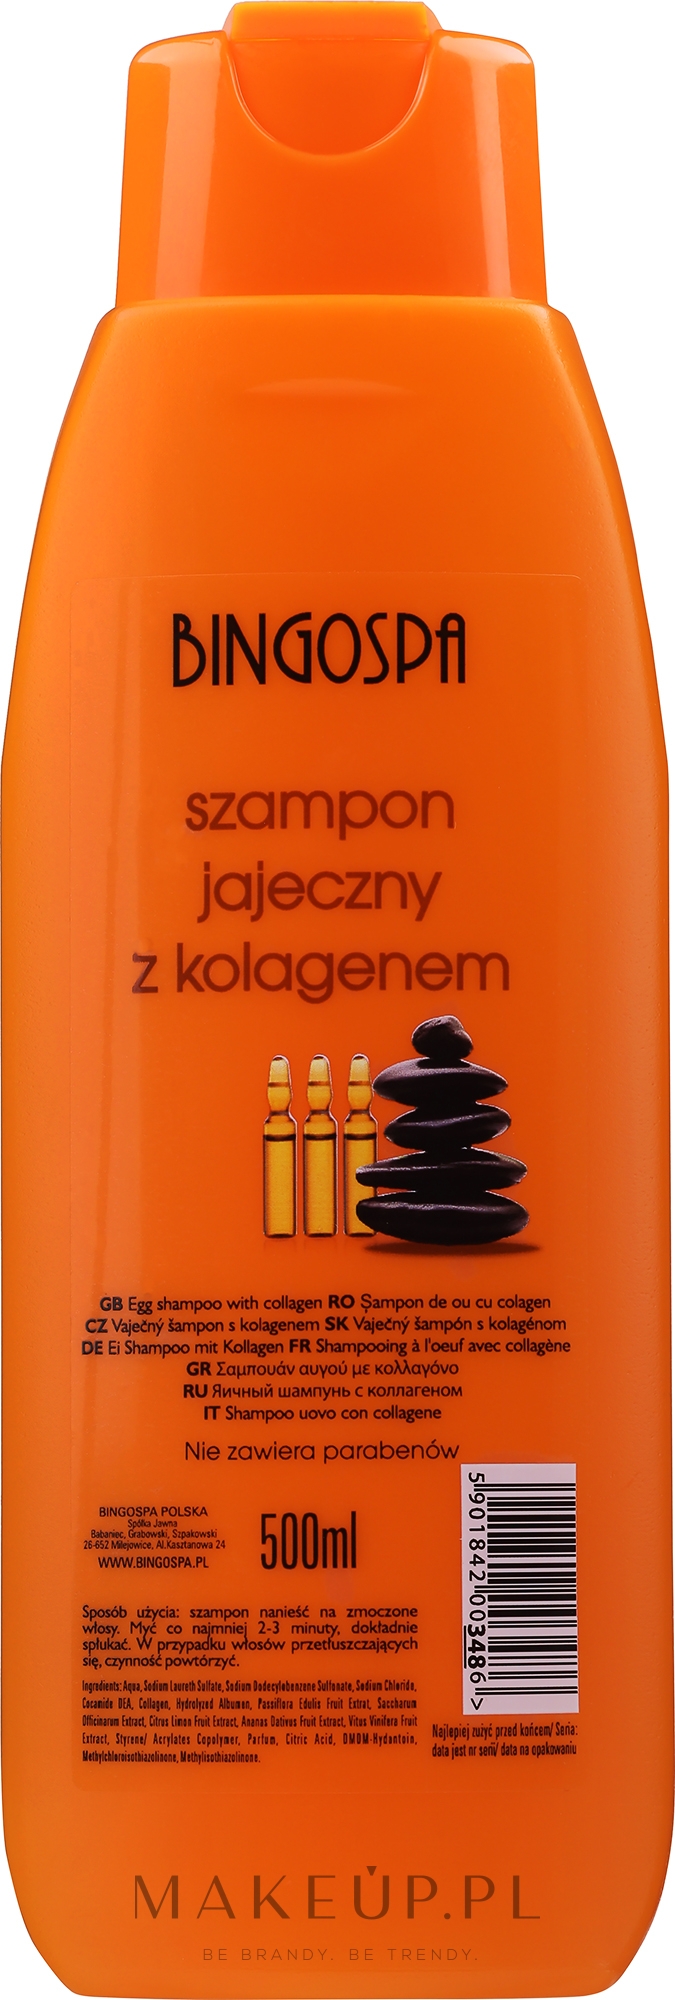 bingospa szampon jajeczny wizaz